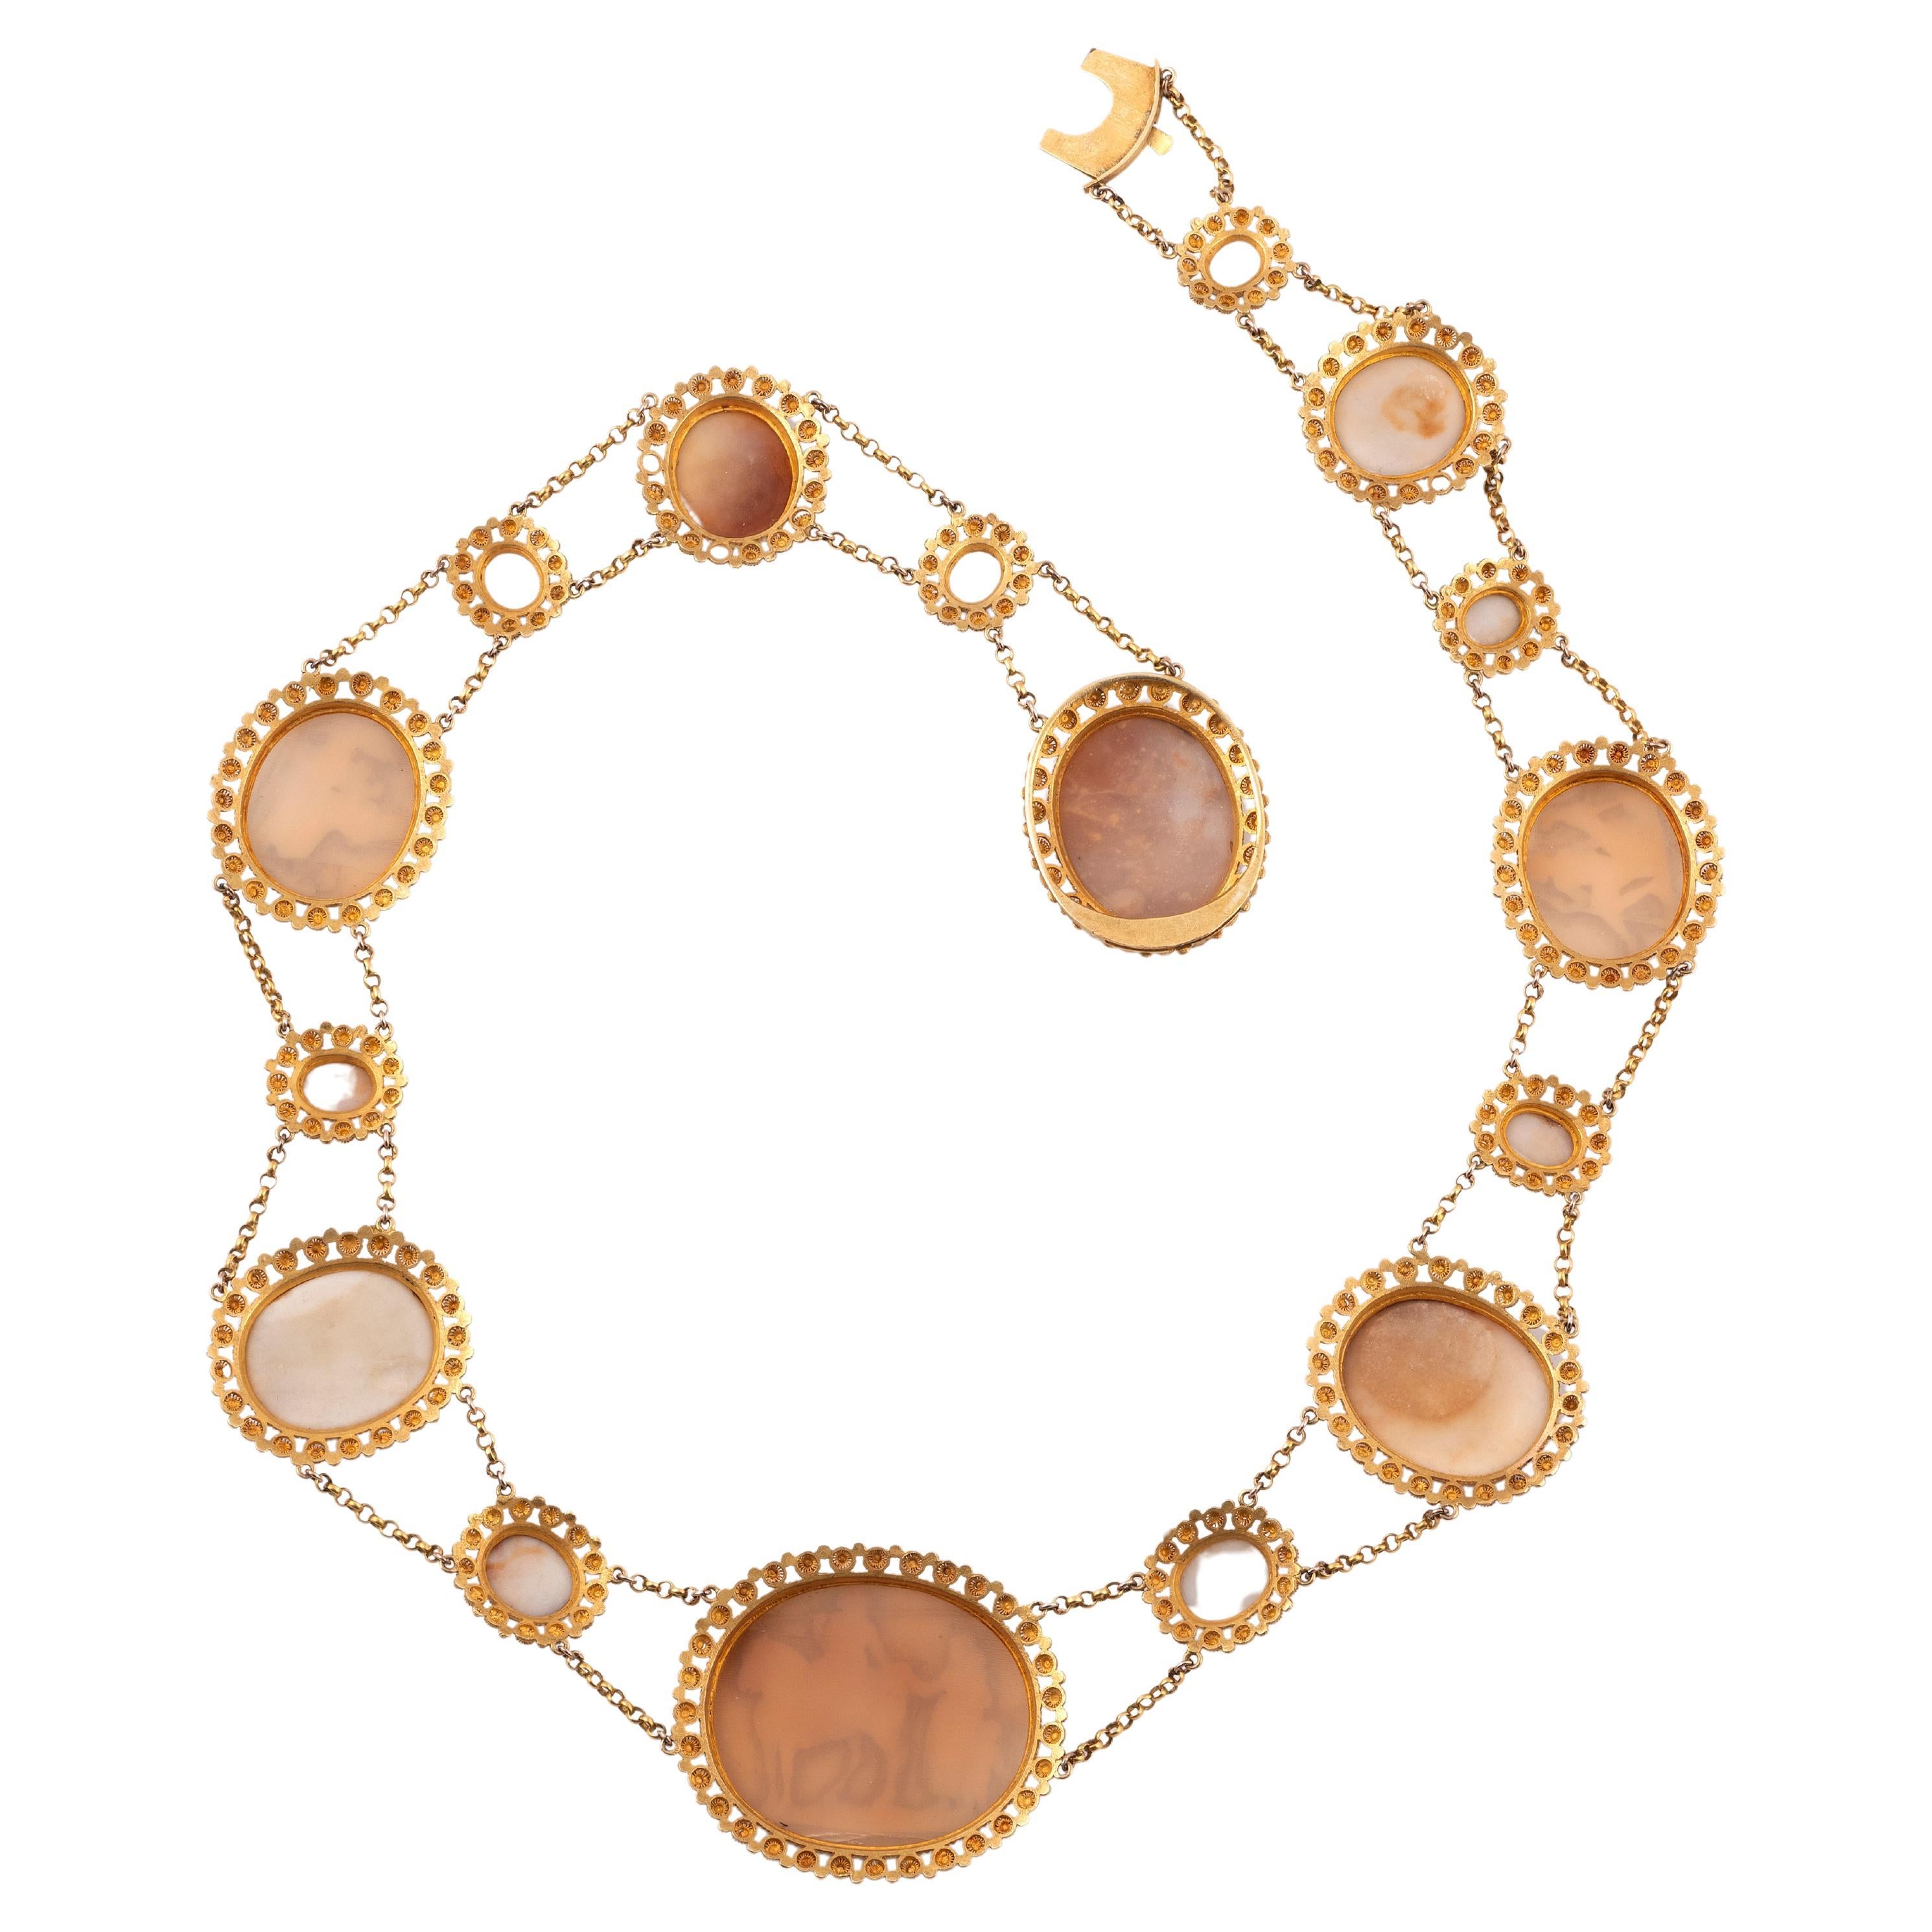 Eine Muschelkameen-Halskette aus dem frühen 19. Jahrhundert, die Muschelkameen sind in goldenen Cannetille-Fassungen mit Pellet-Dekoration gefasst, Halskette 46 cm lang
Gewicht:50.5gr.